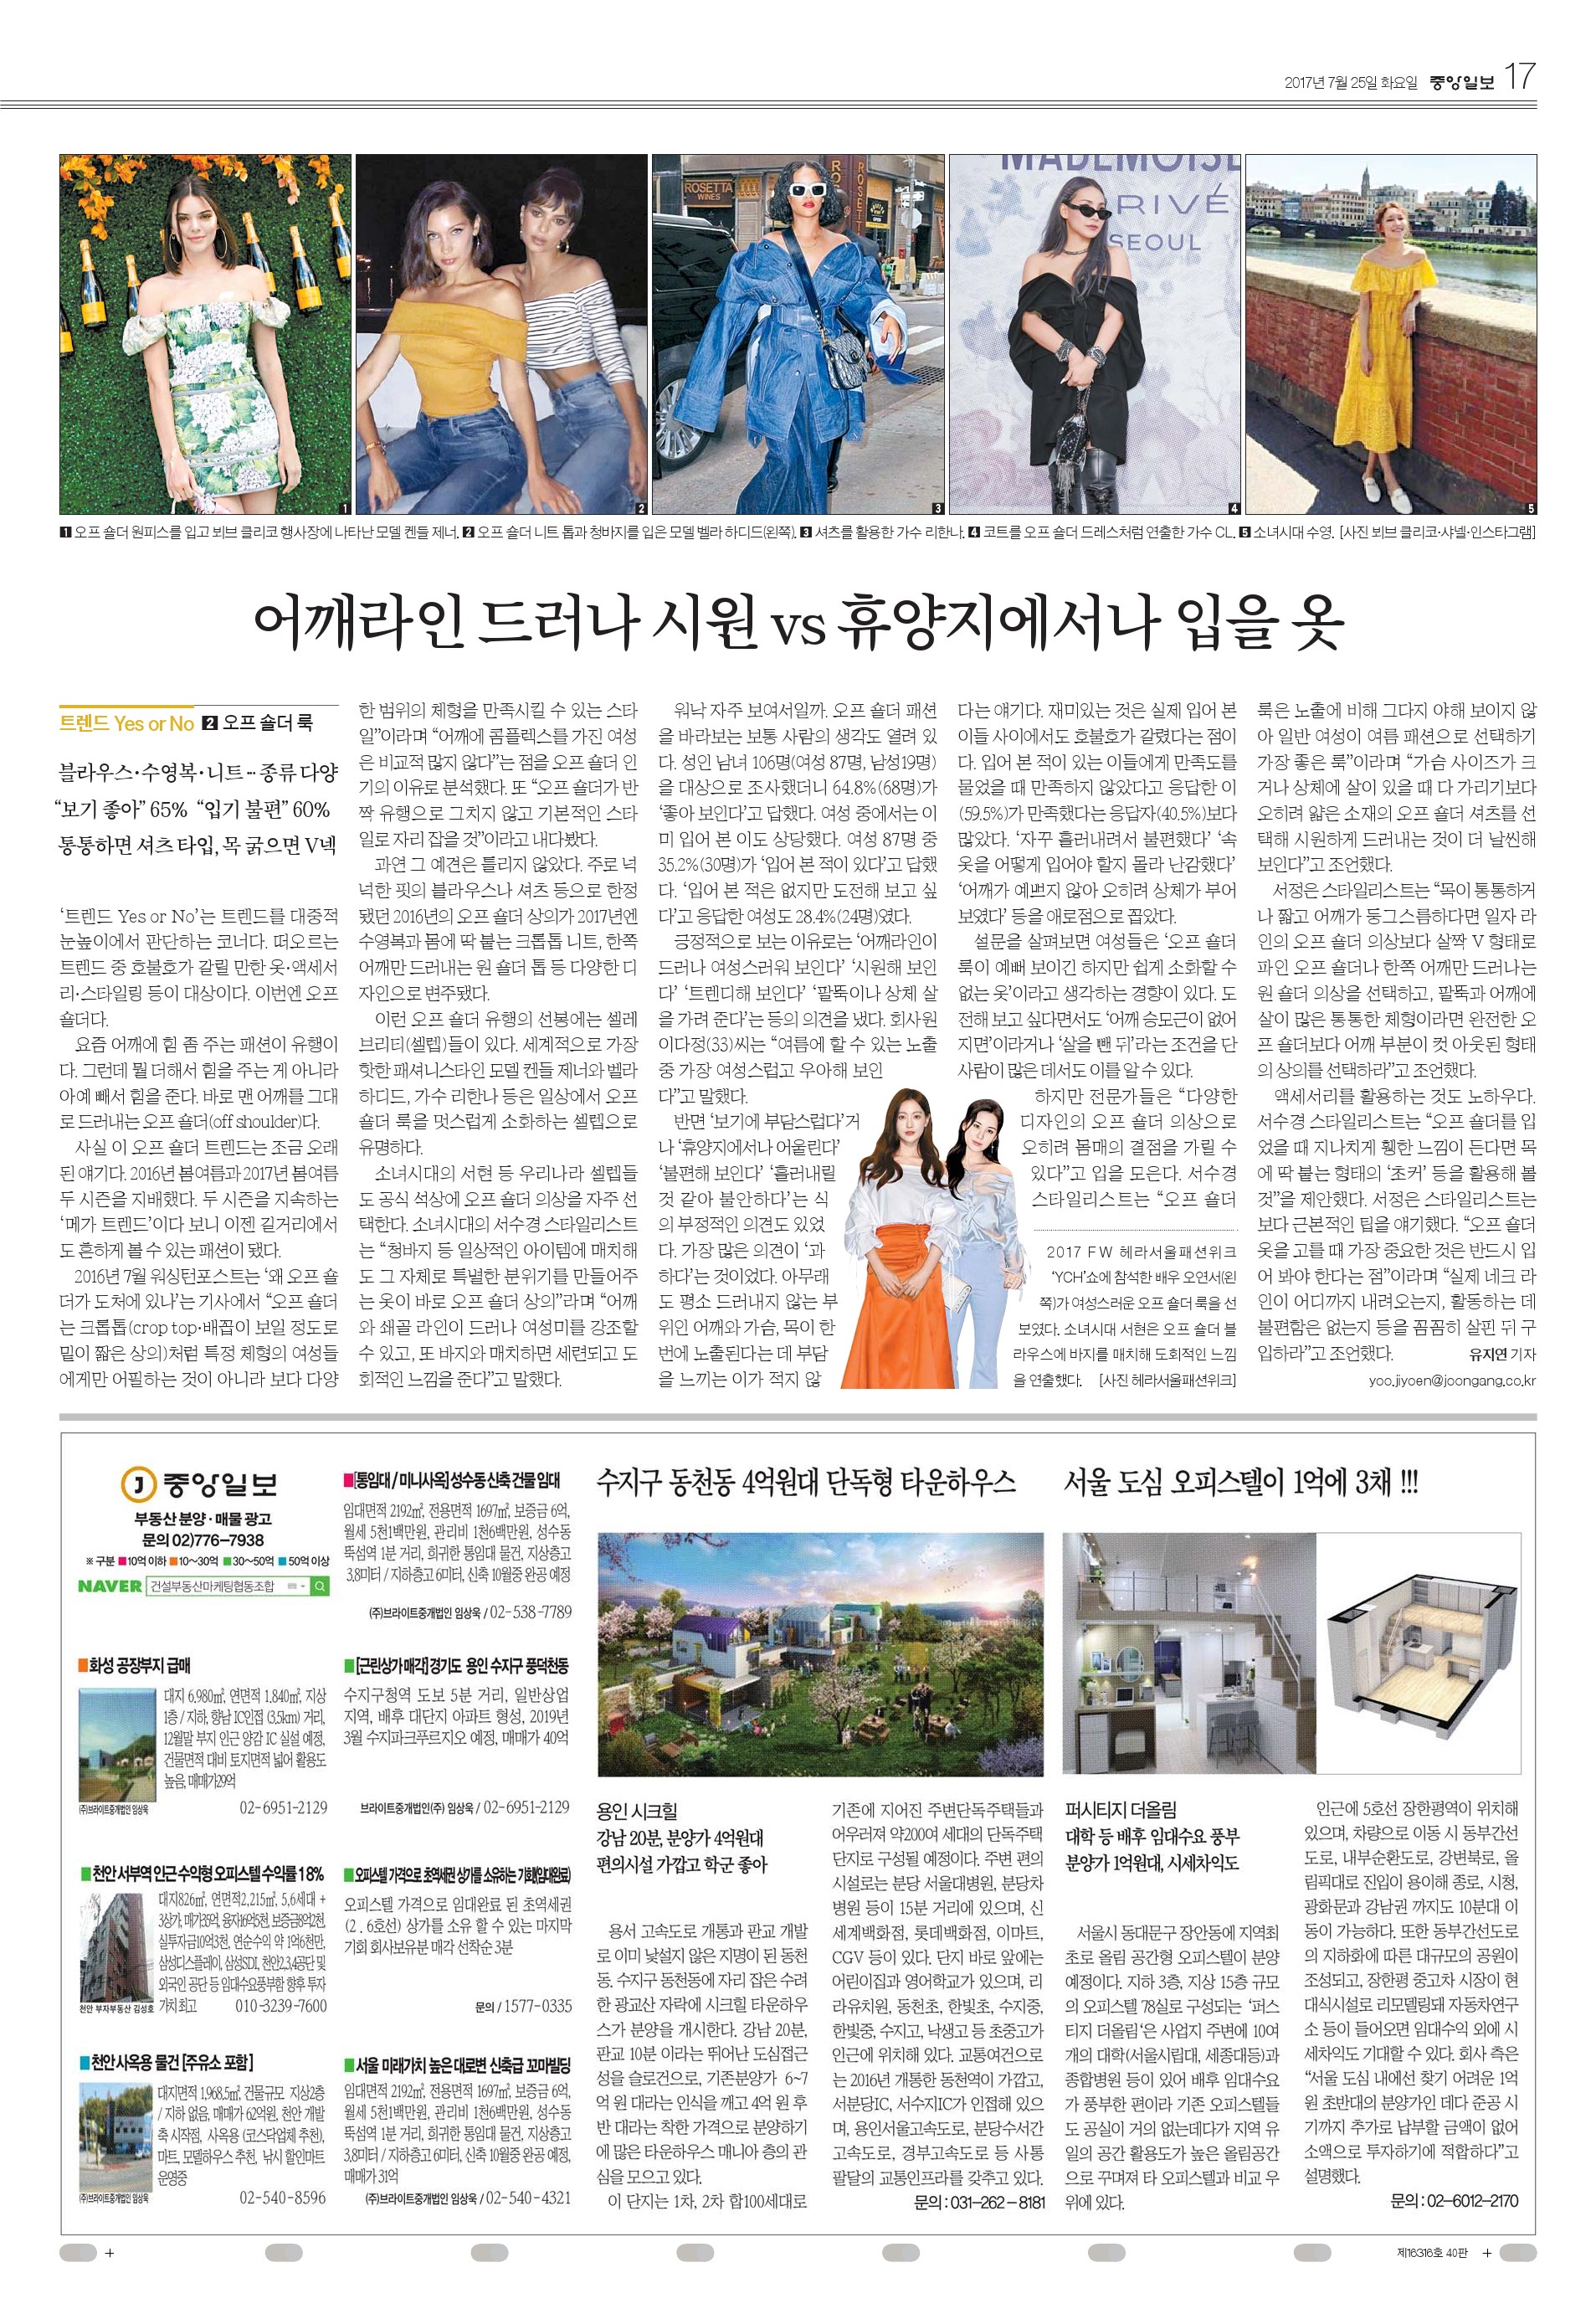 중앙일보 20170725.jpg